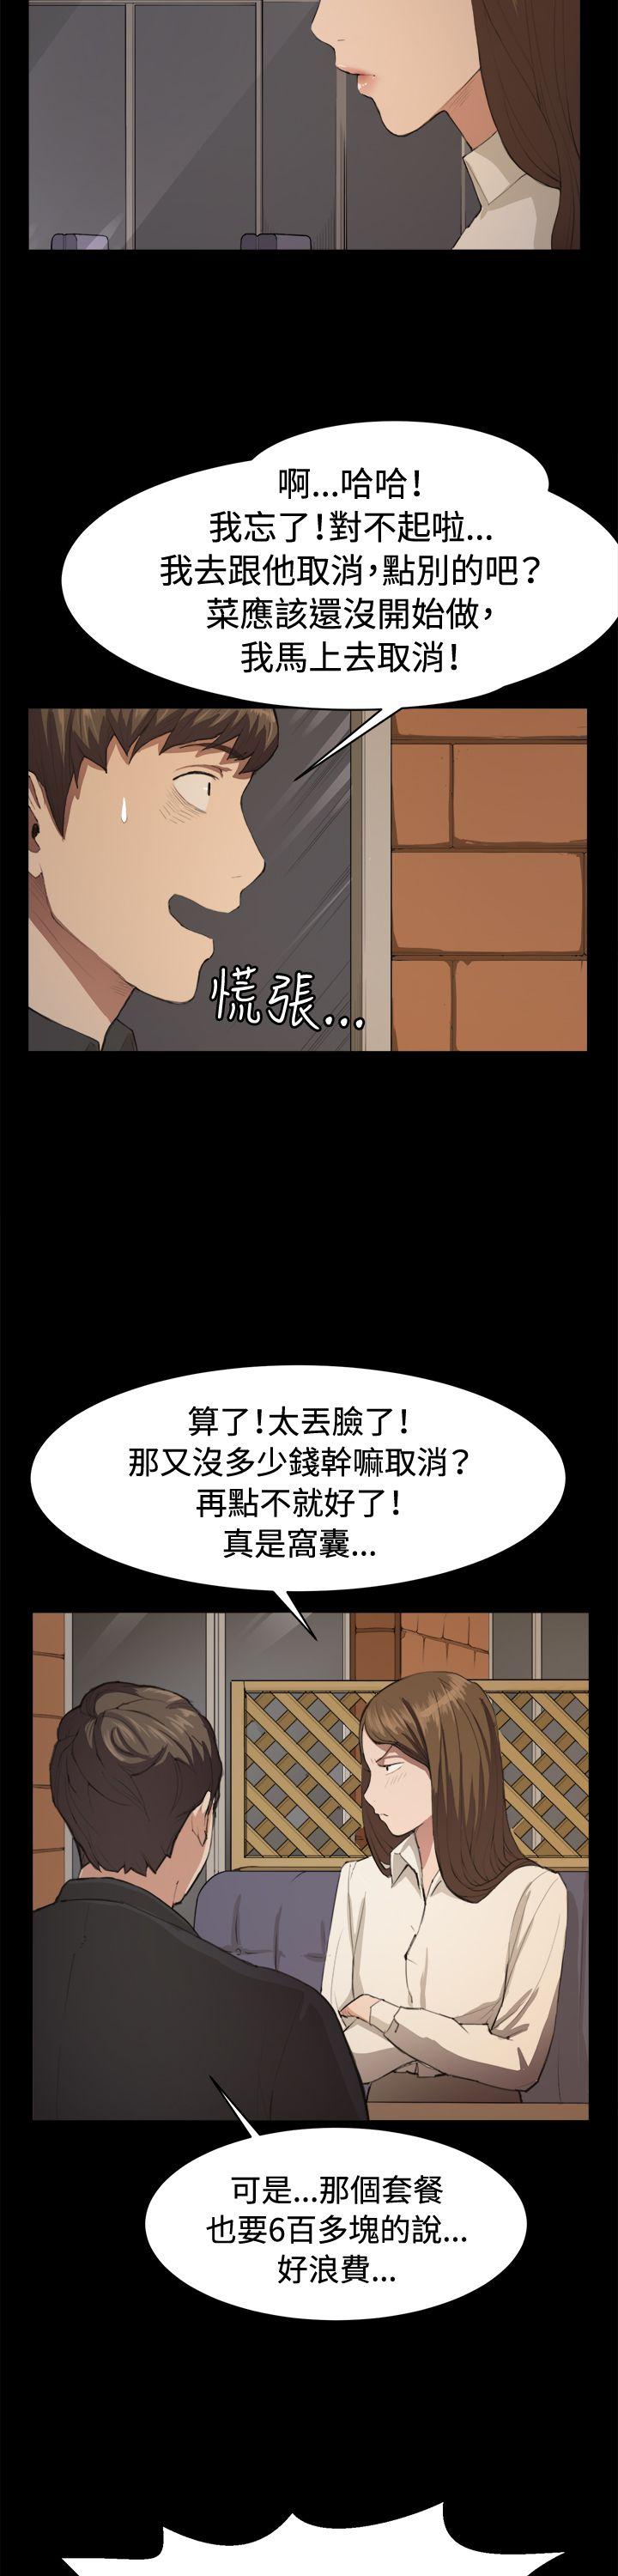 深夜便利店  第10话 漫画图片3.jpg